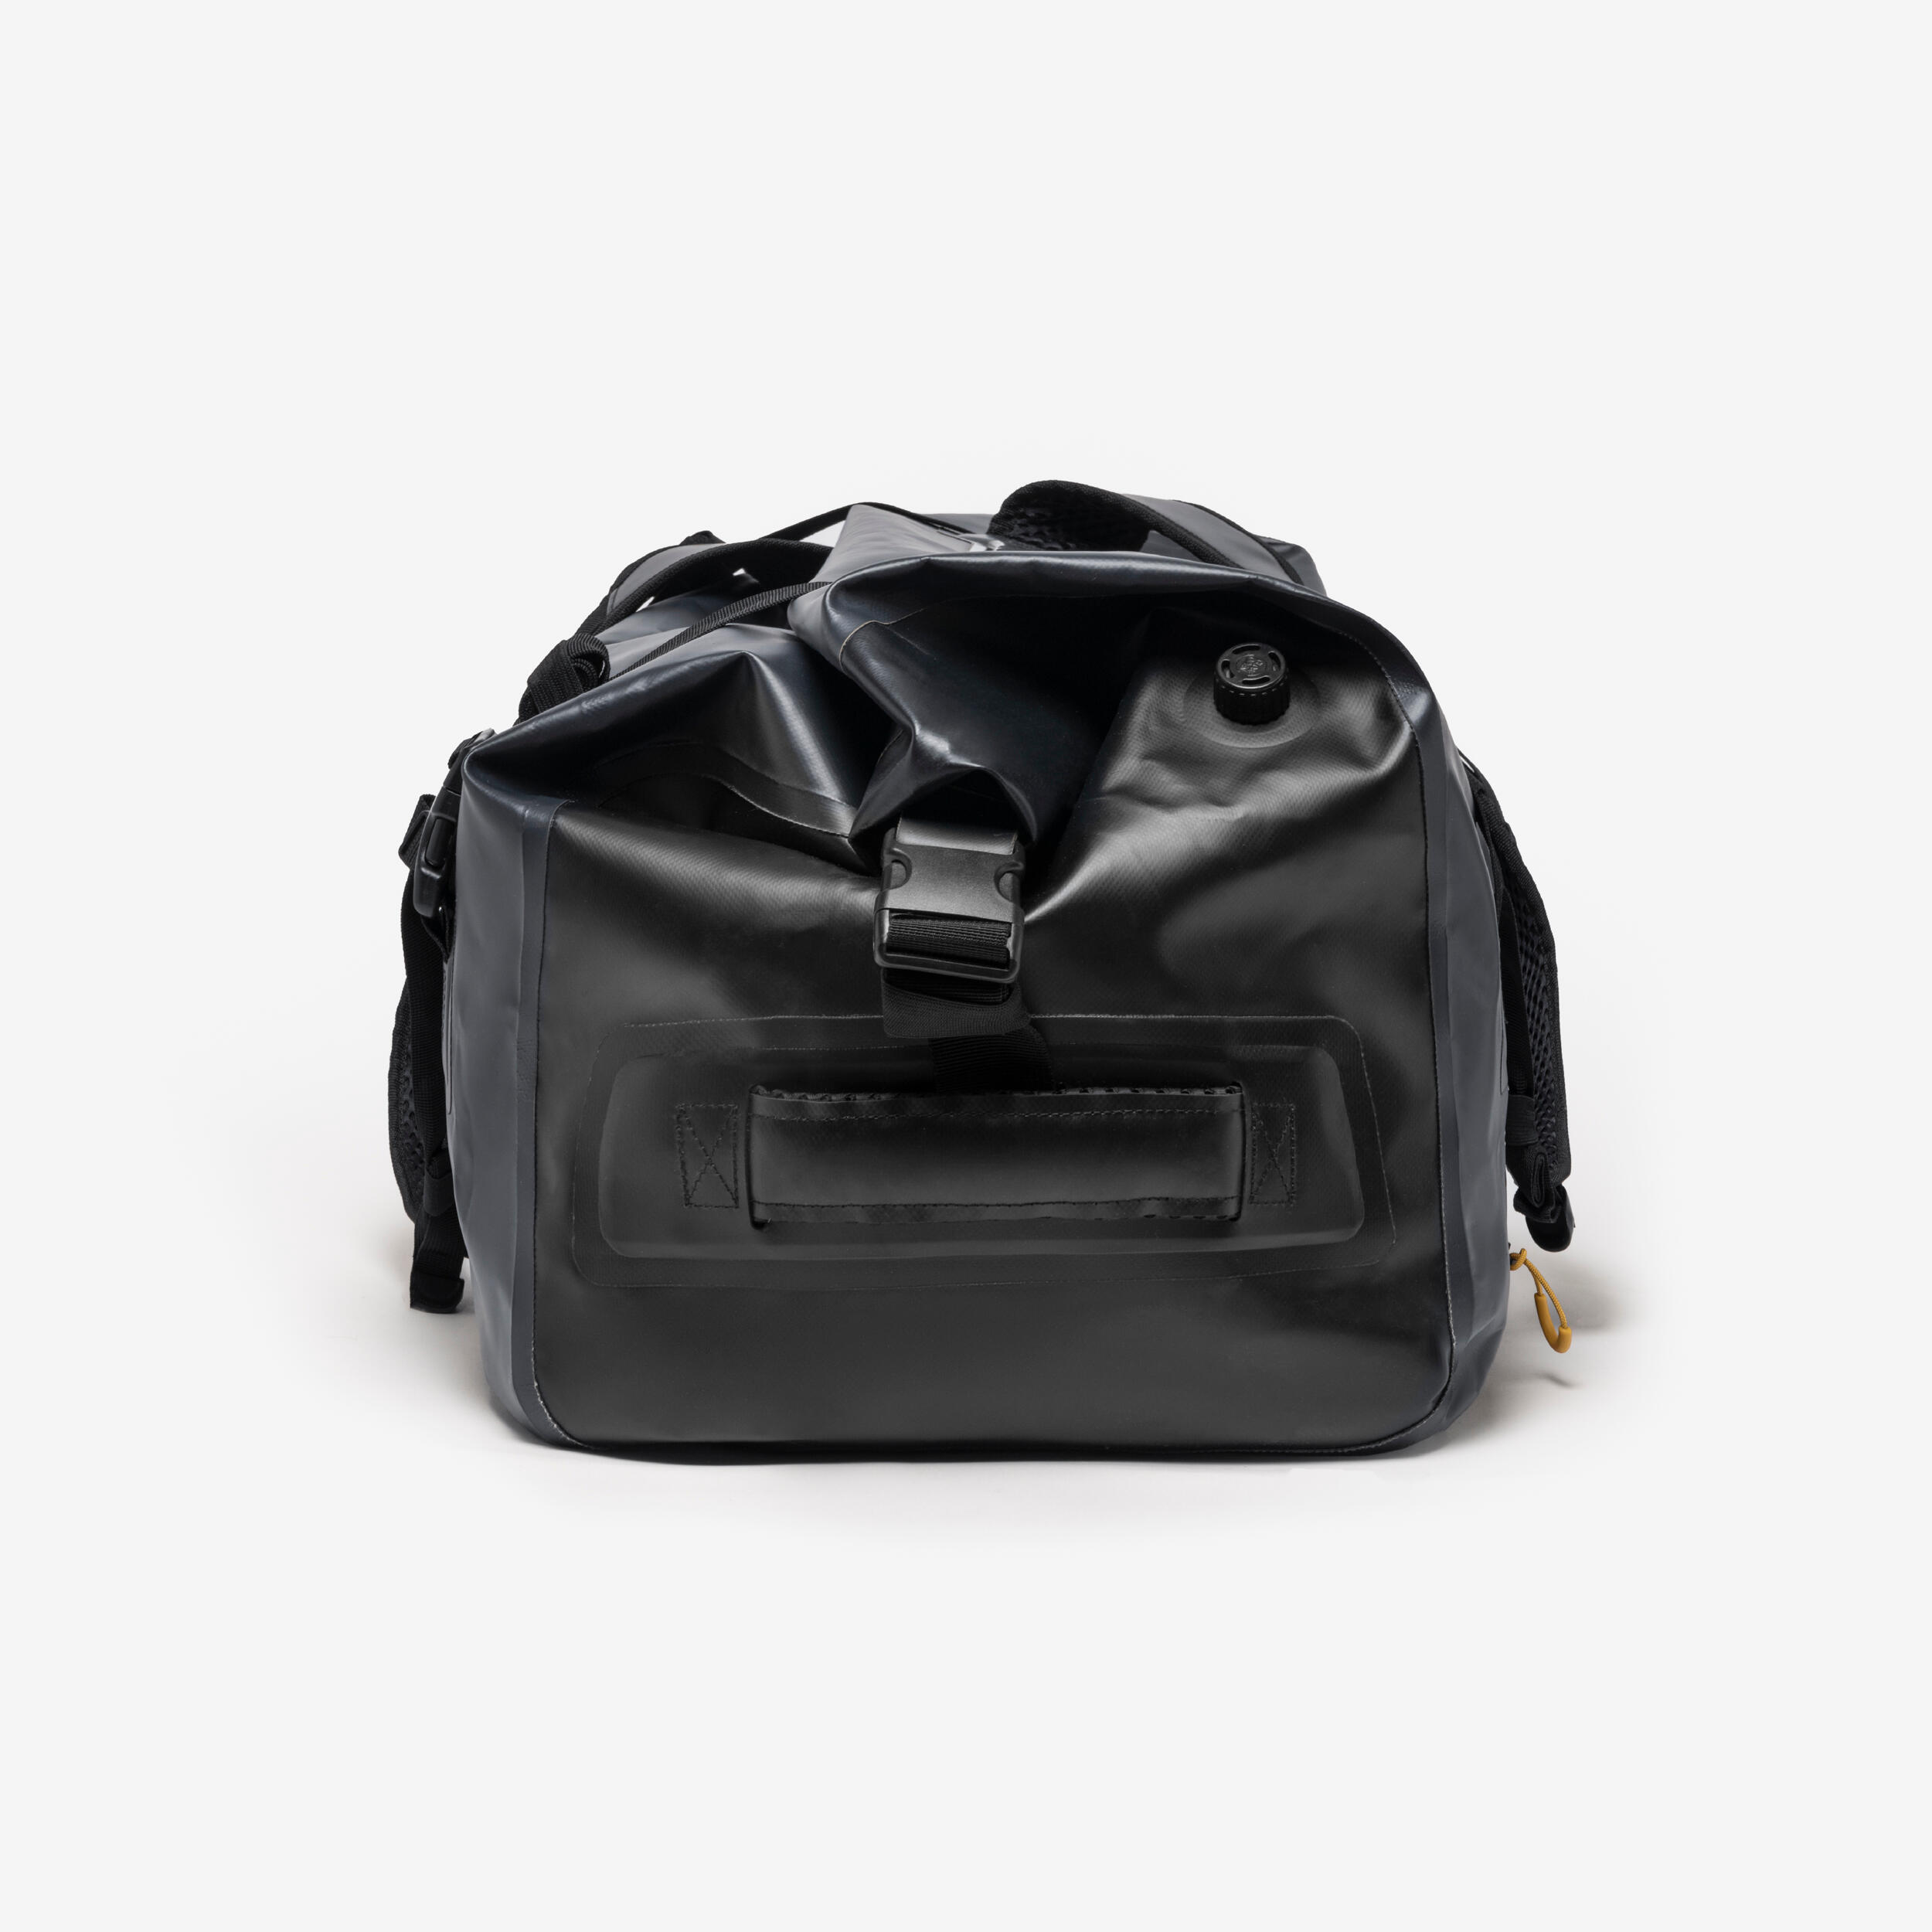 Waterproof duffle bag - 80 L travel bag Anthracite black 7/16